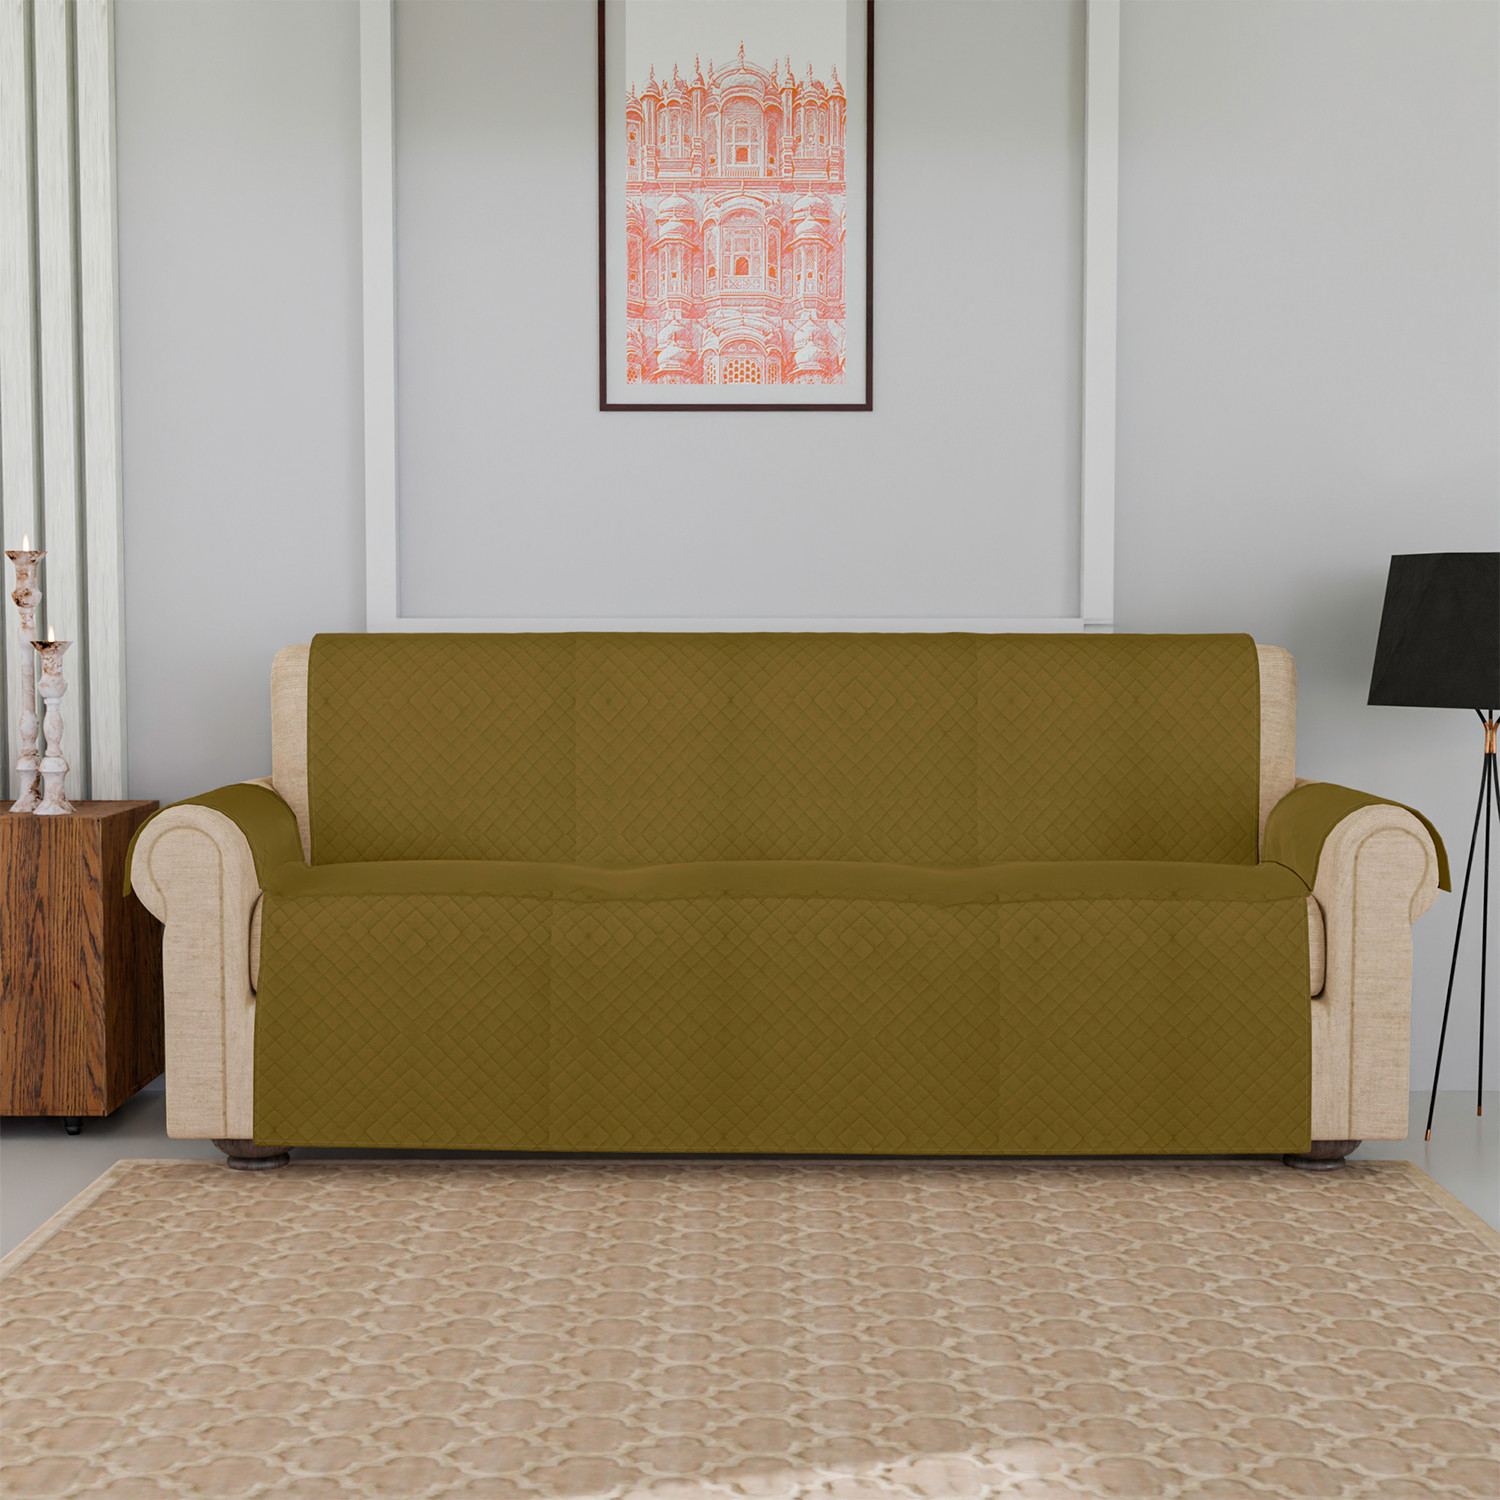 Kuber Industries Sofa Cover | Velvet Sofa Cover | 3-Seater Sofa Cover for Home Décor | 450 GSM Sofa Cover Set for Living Room | Sofa Slipcover | Couch Cover | Gold